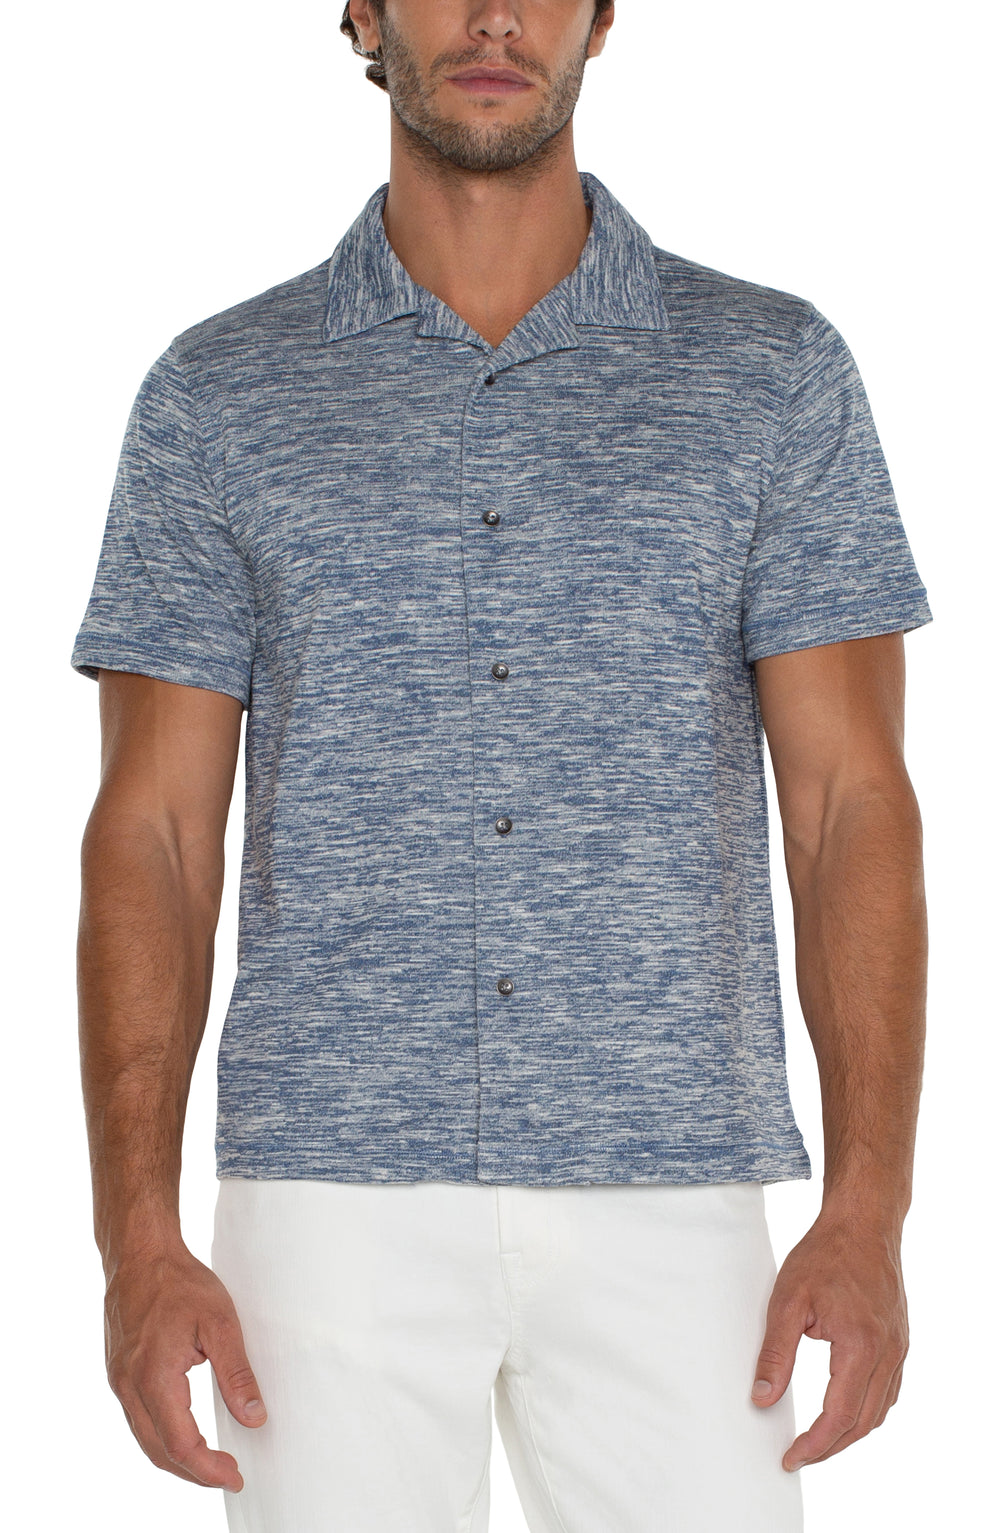 Men's button up camp shirt - Tru Blue Boutique